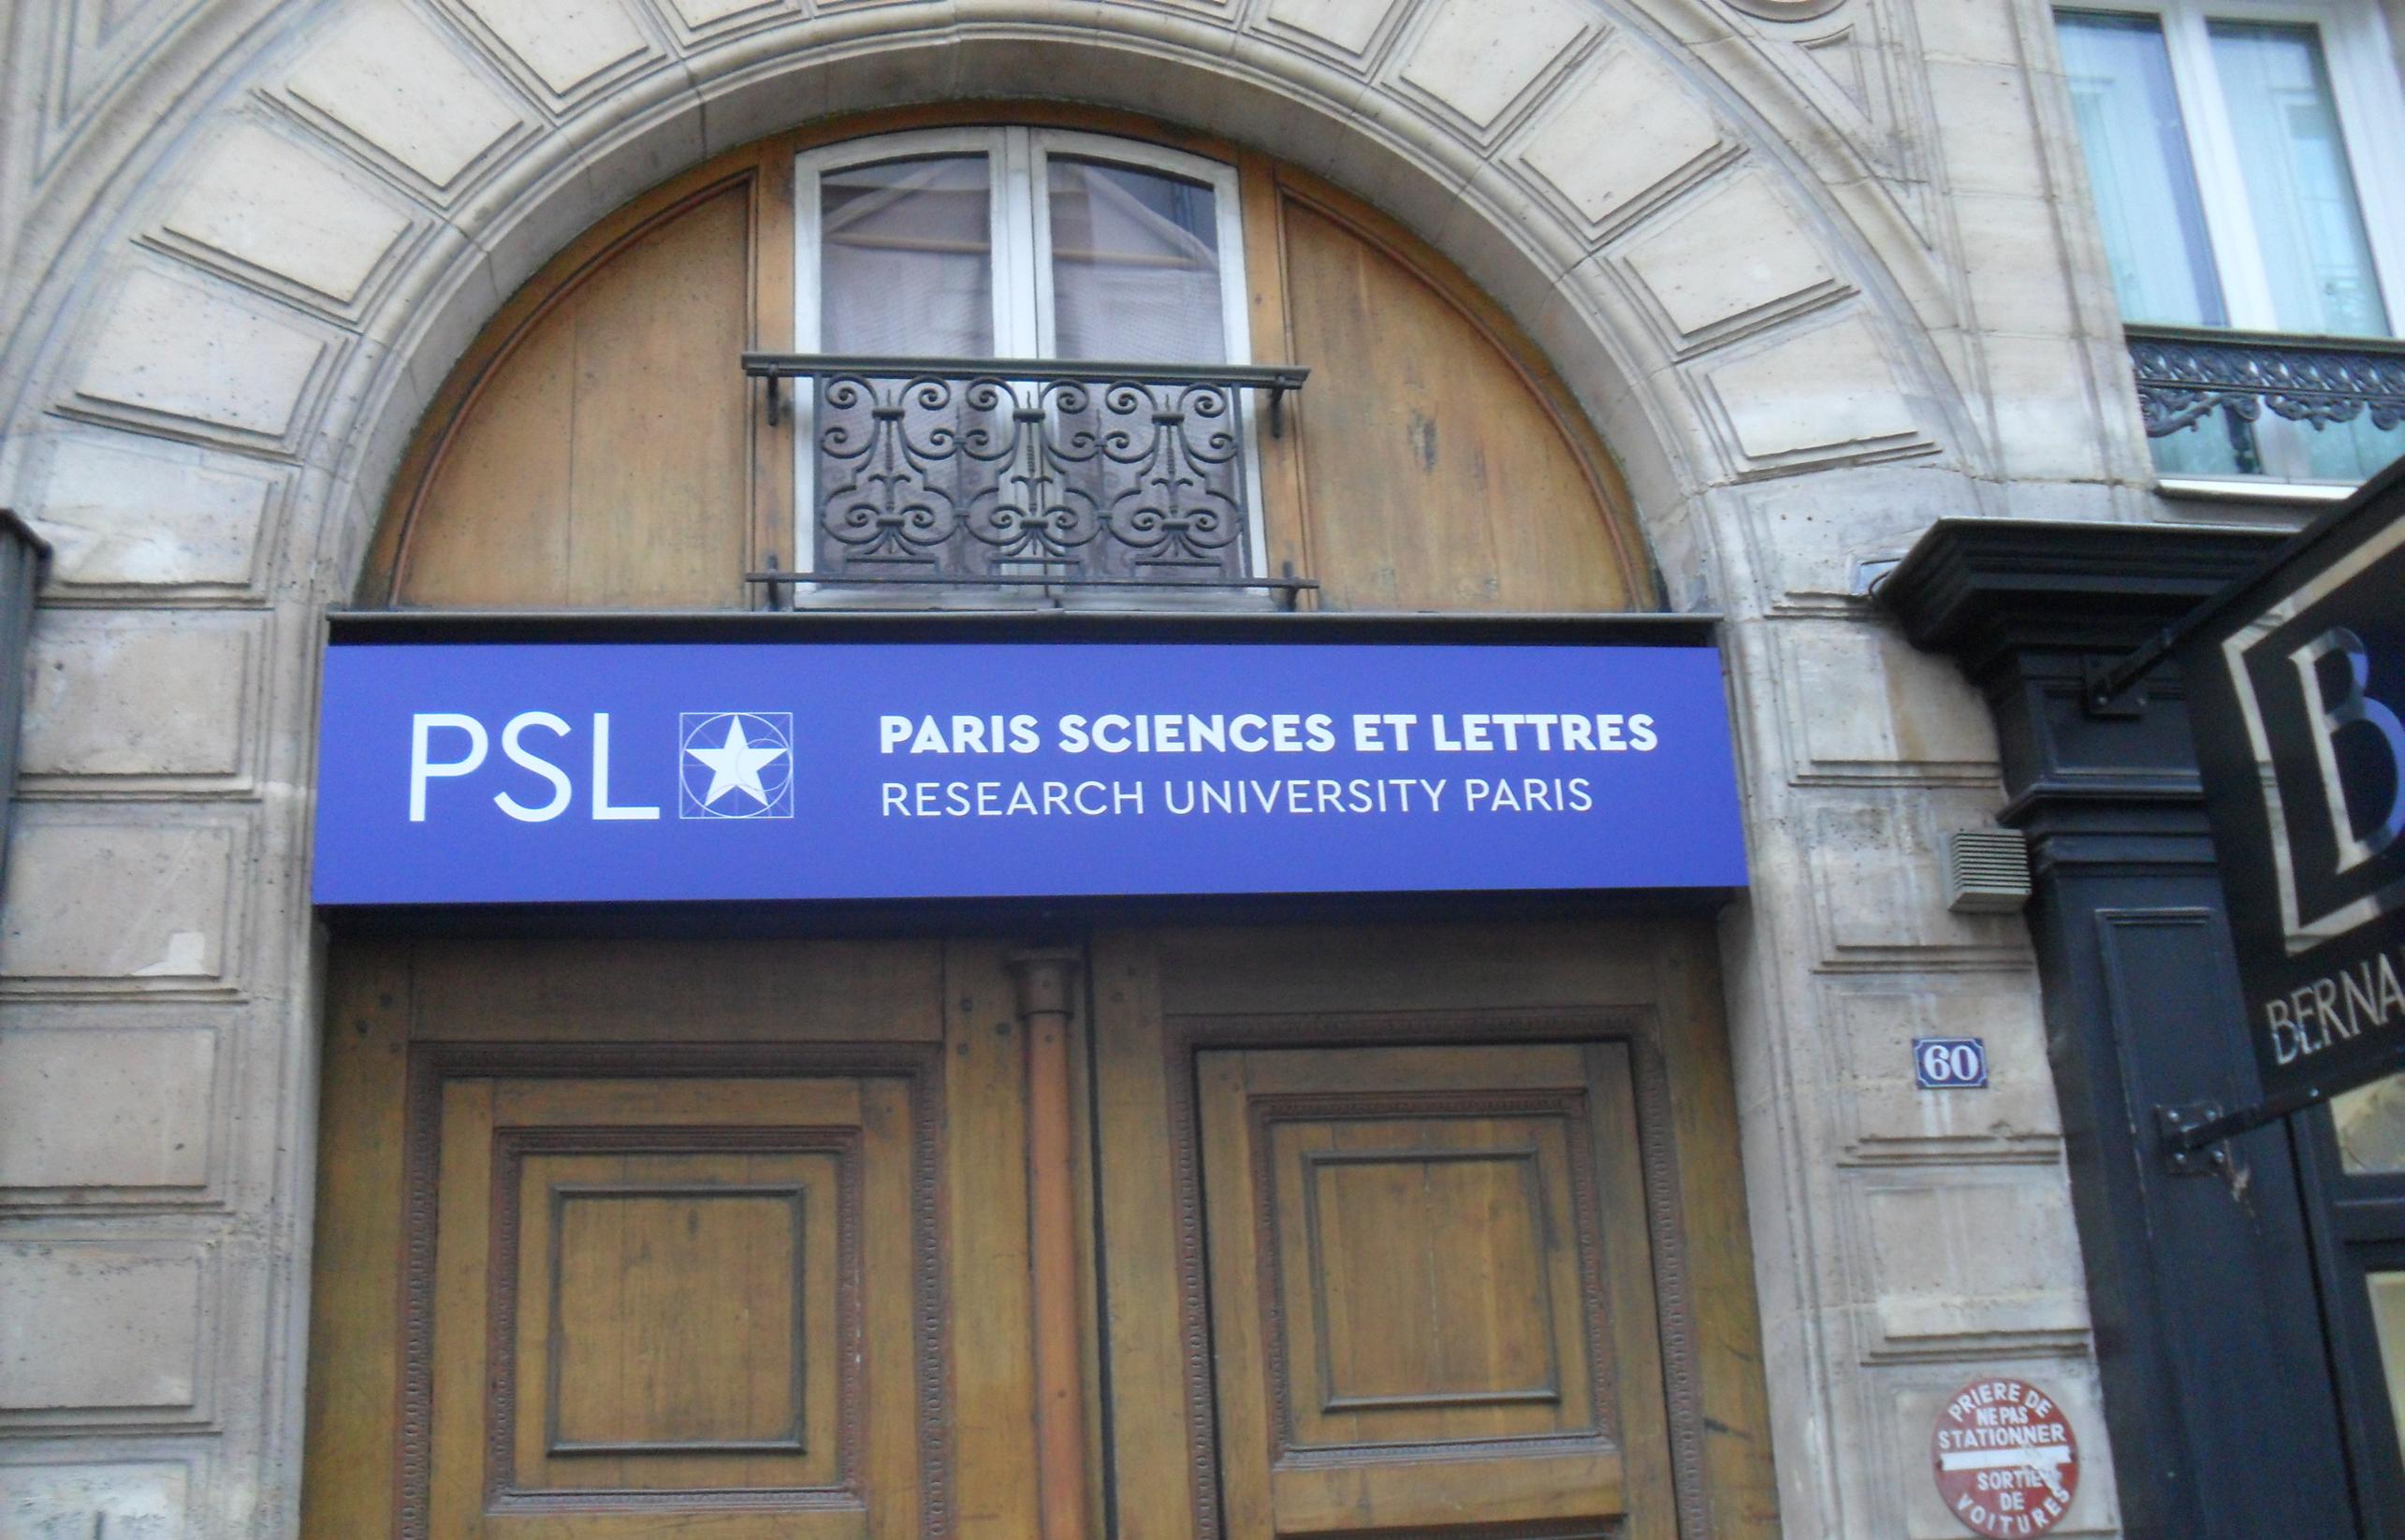 PSL Paris Sciences et Lettres et son logotype